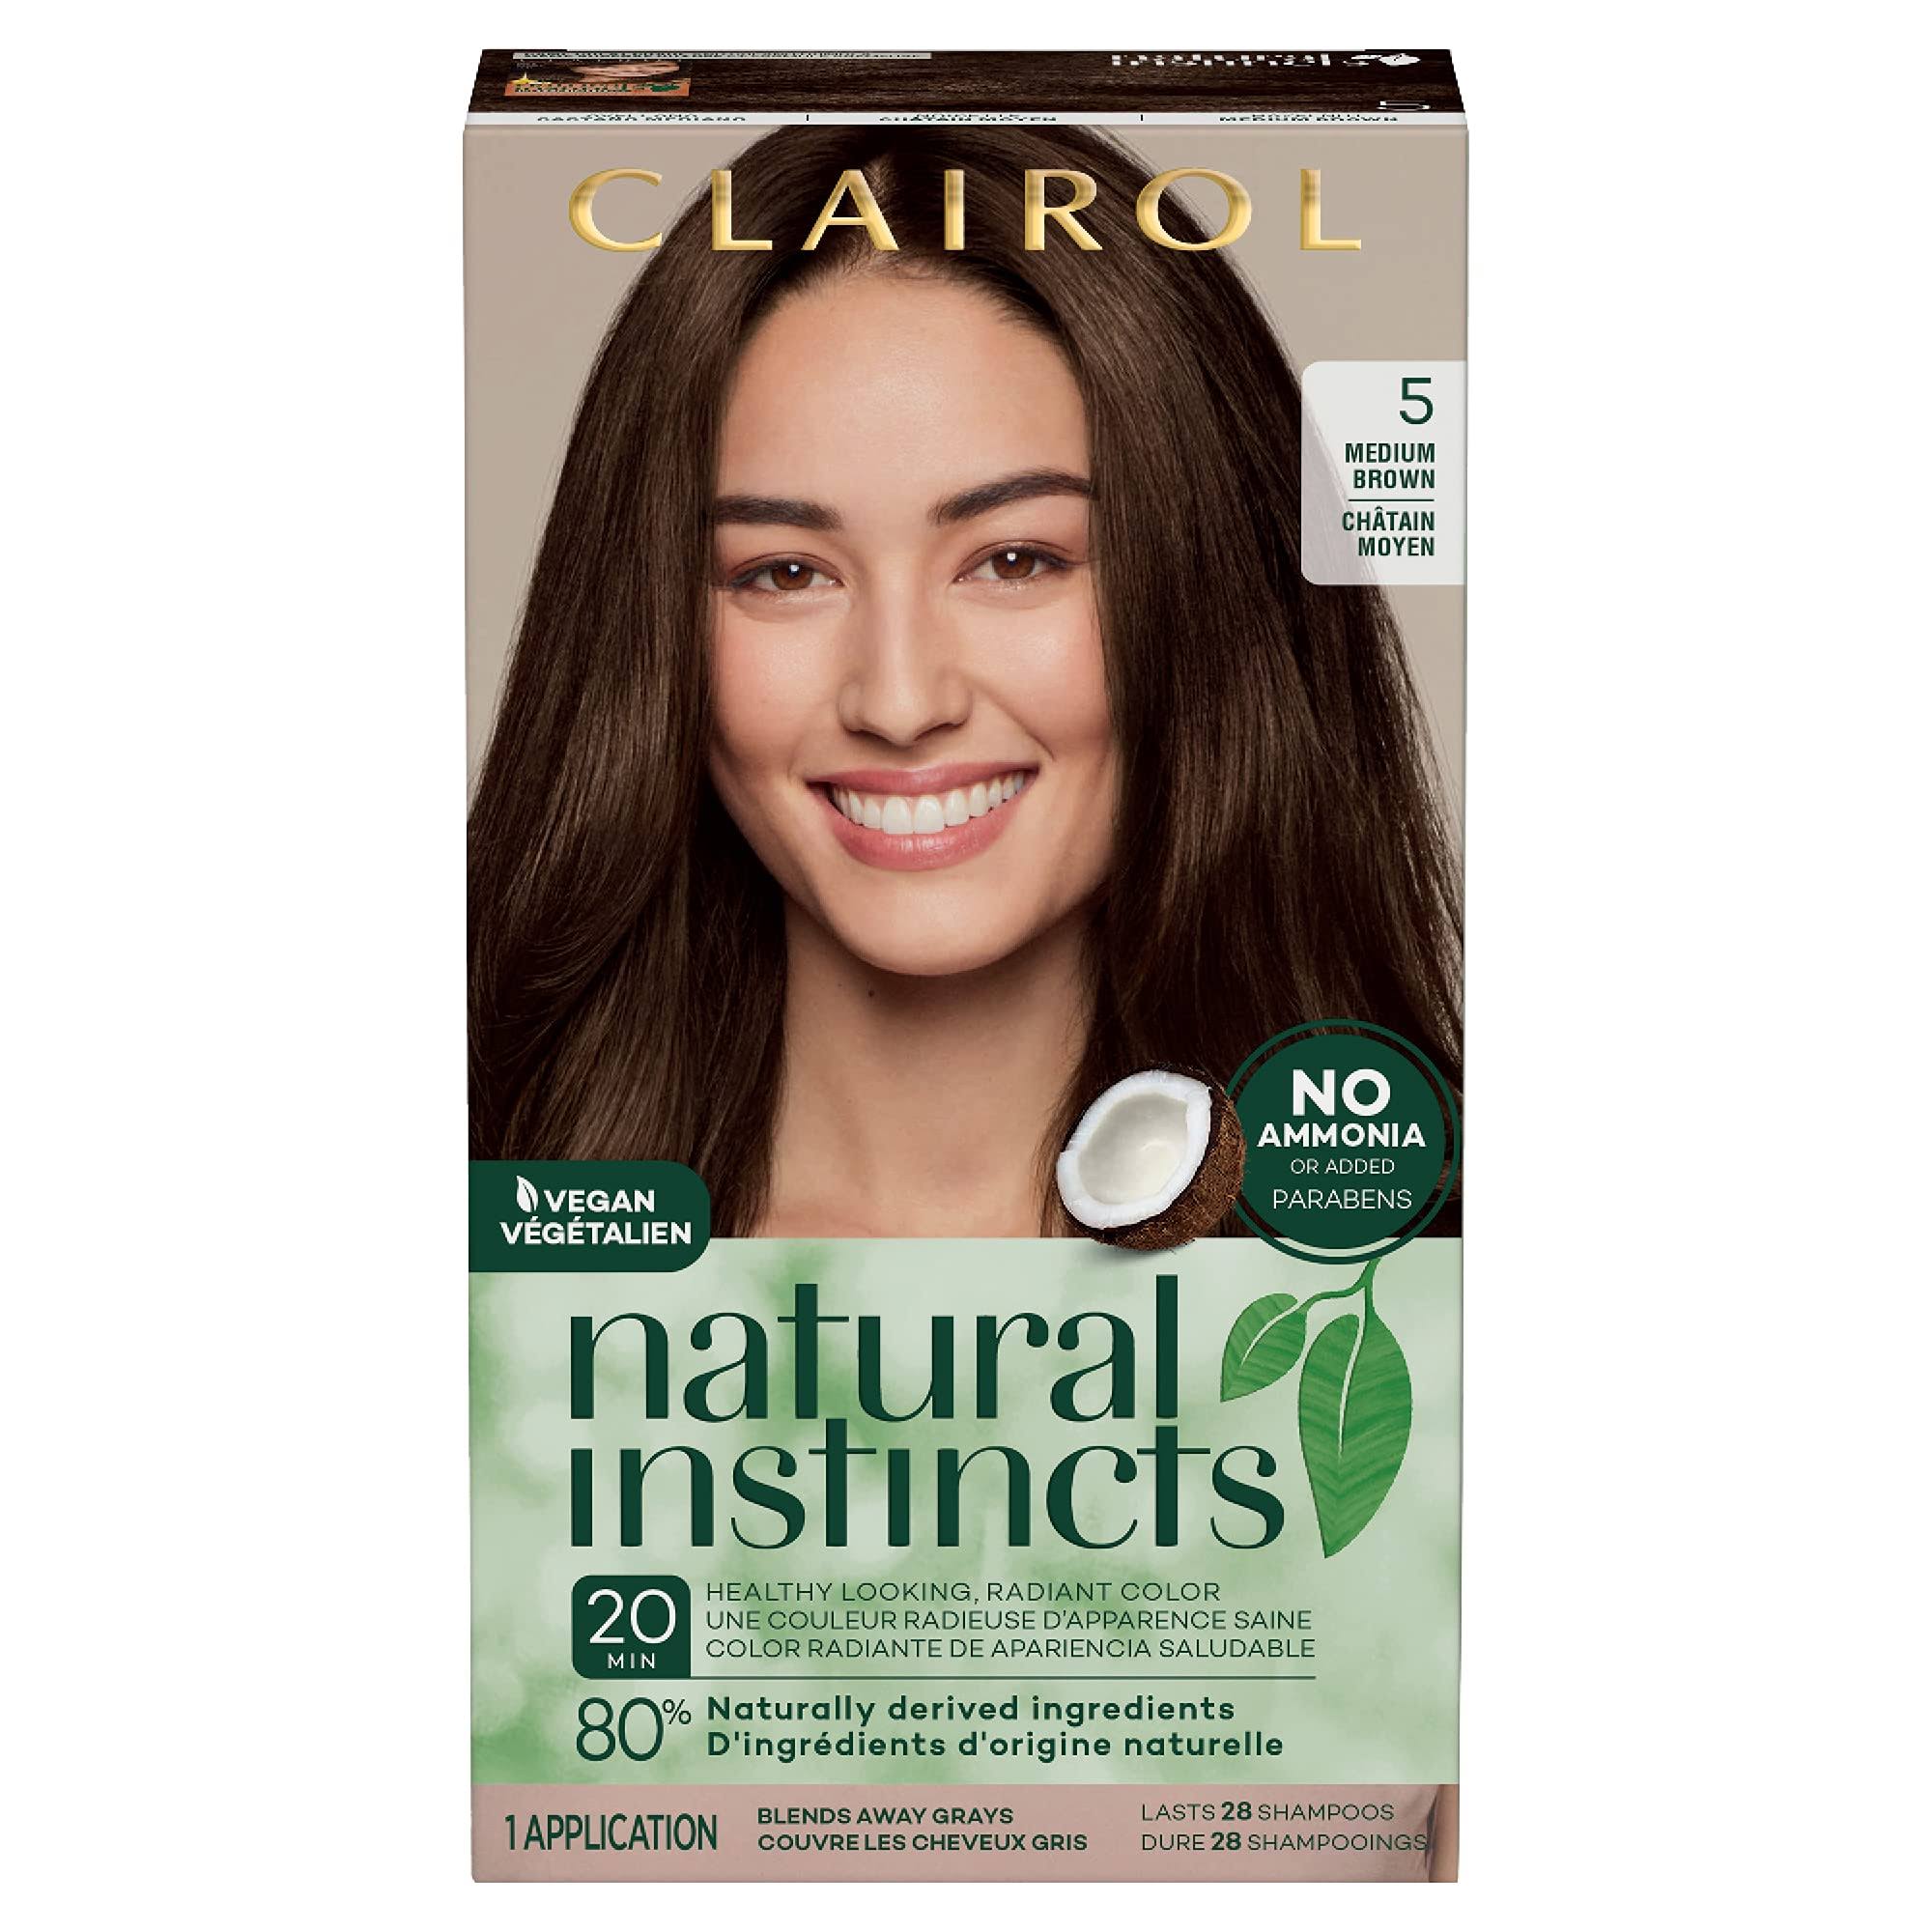 Clairol Natural Instincts Semi-Permanent Hair Color - Medium Brown